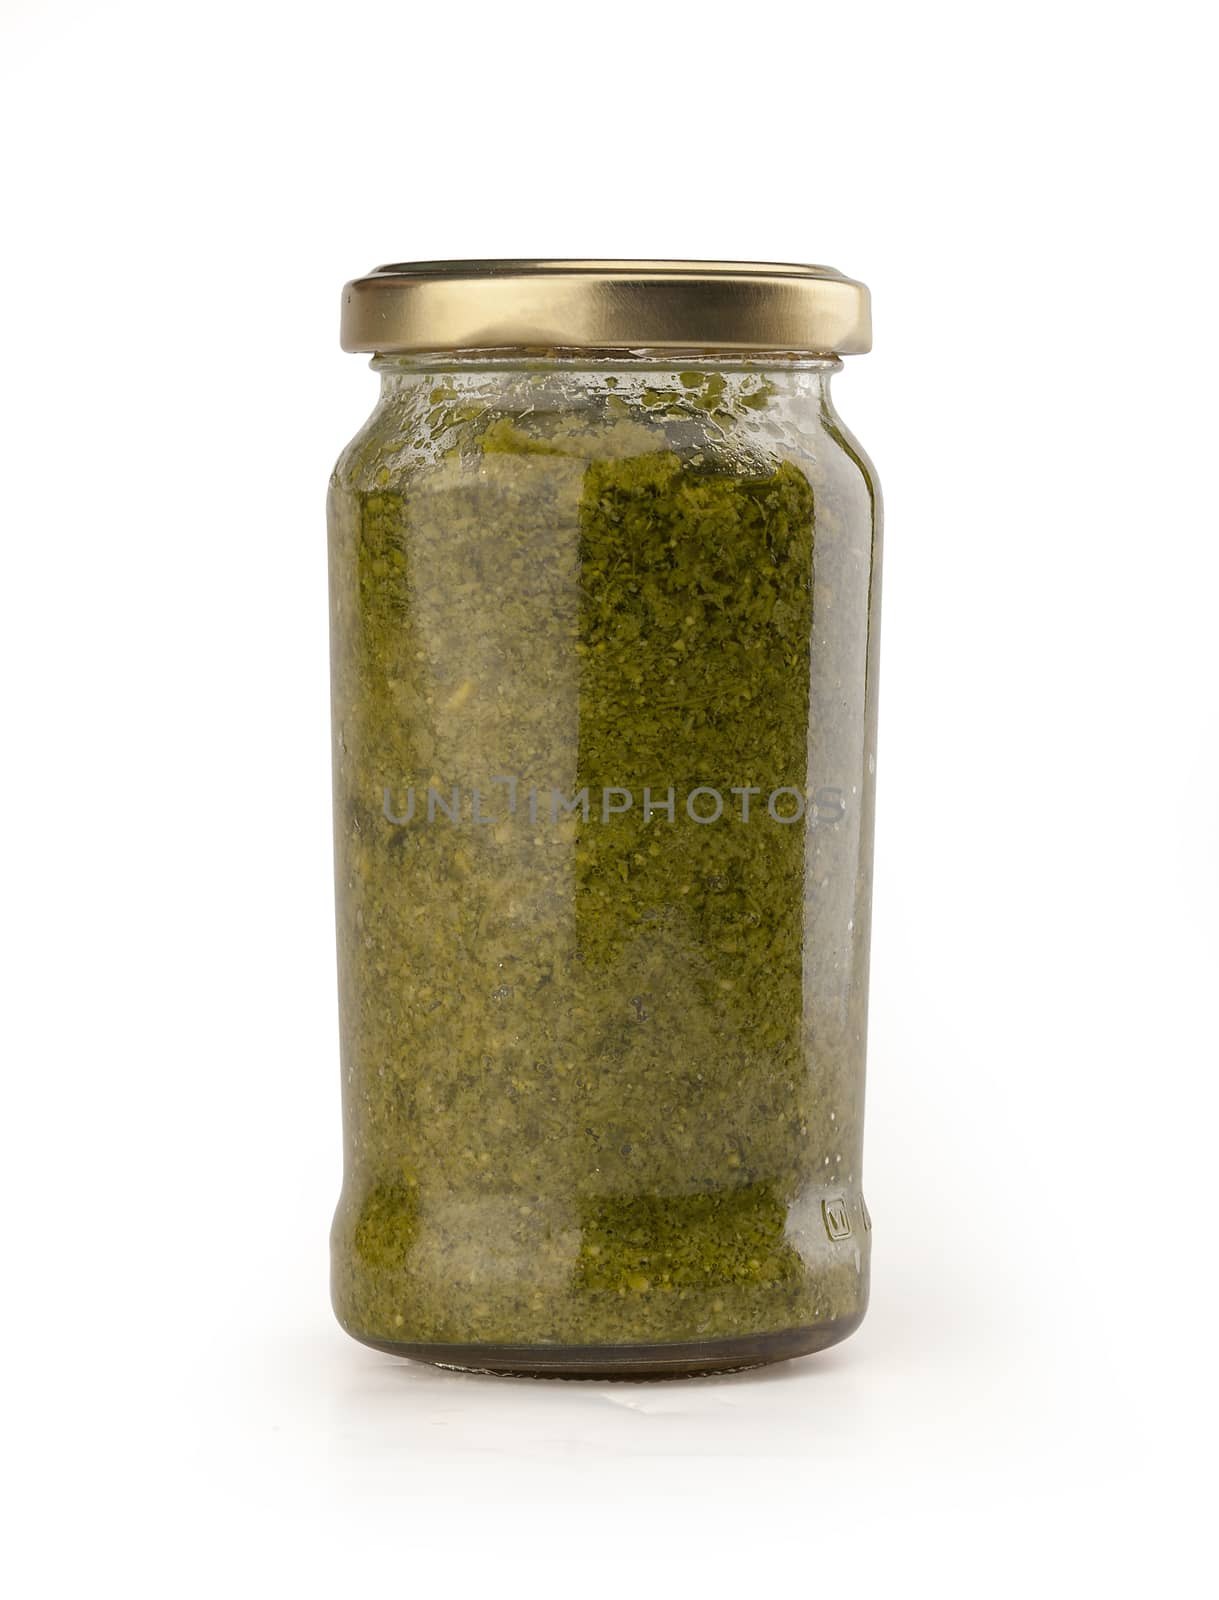 Pesto sauce in the glass jar by Angorius